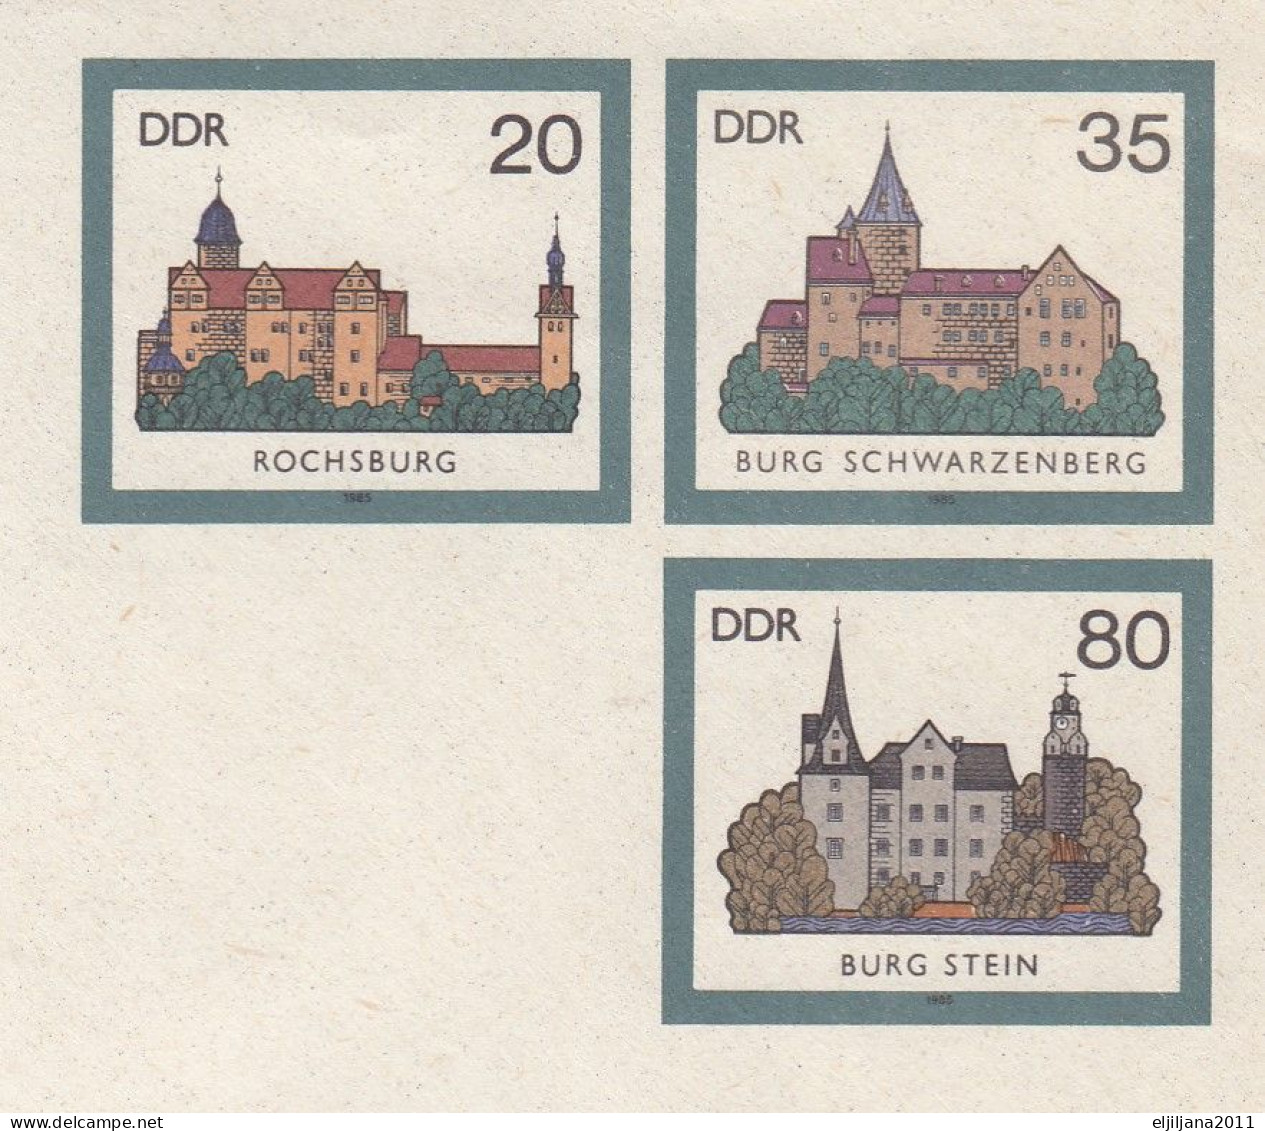 ⁕ Germany DDR 1985 ⁕ "Burgen Der DDR" / Postal Stationery ⁕ 3v Unused Cover FDC Ausgabetag / WERMSDORF - Covers - Mint